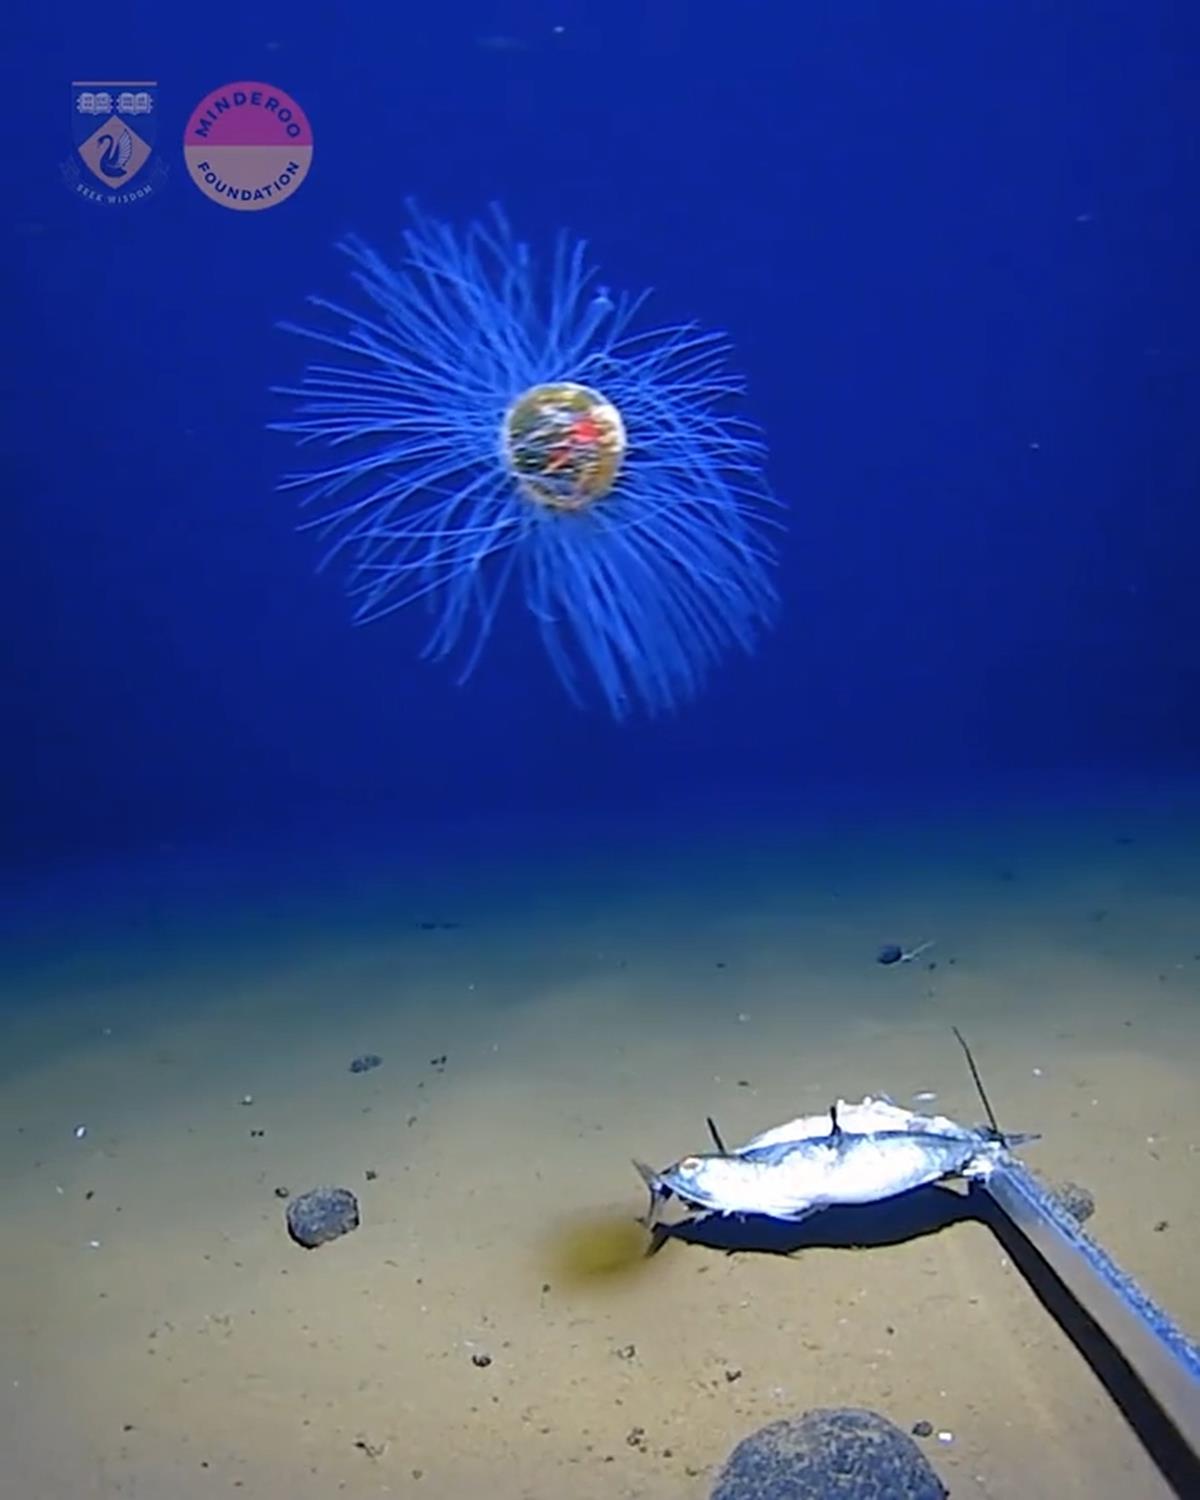 Okyanusun 5 bin metre derinliinde grntlendi! ok nadir rastlanyor